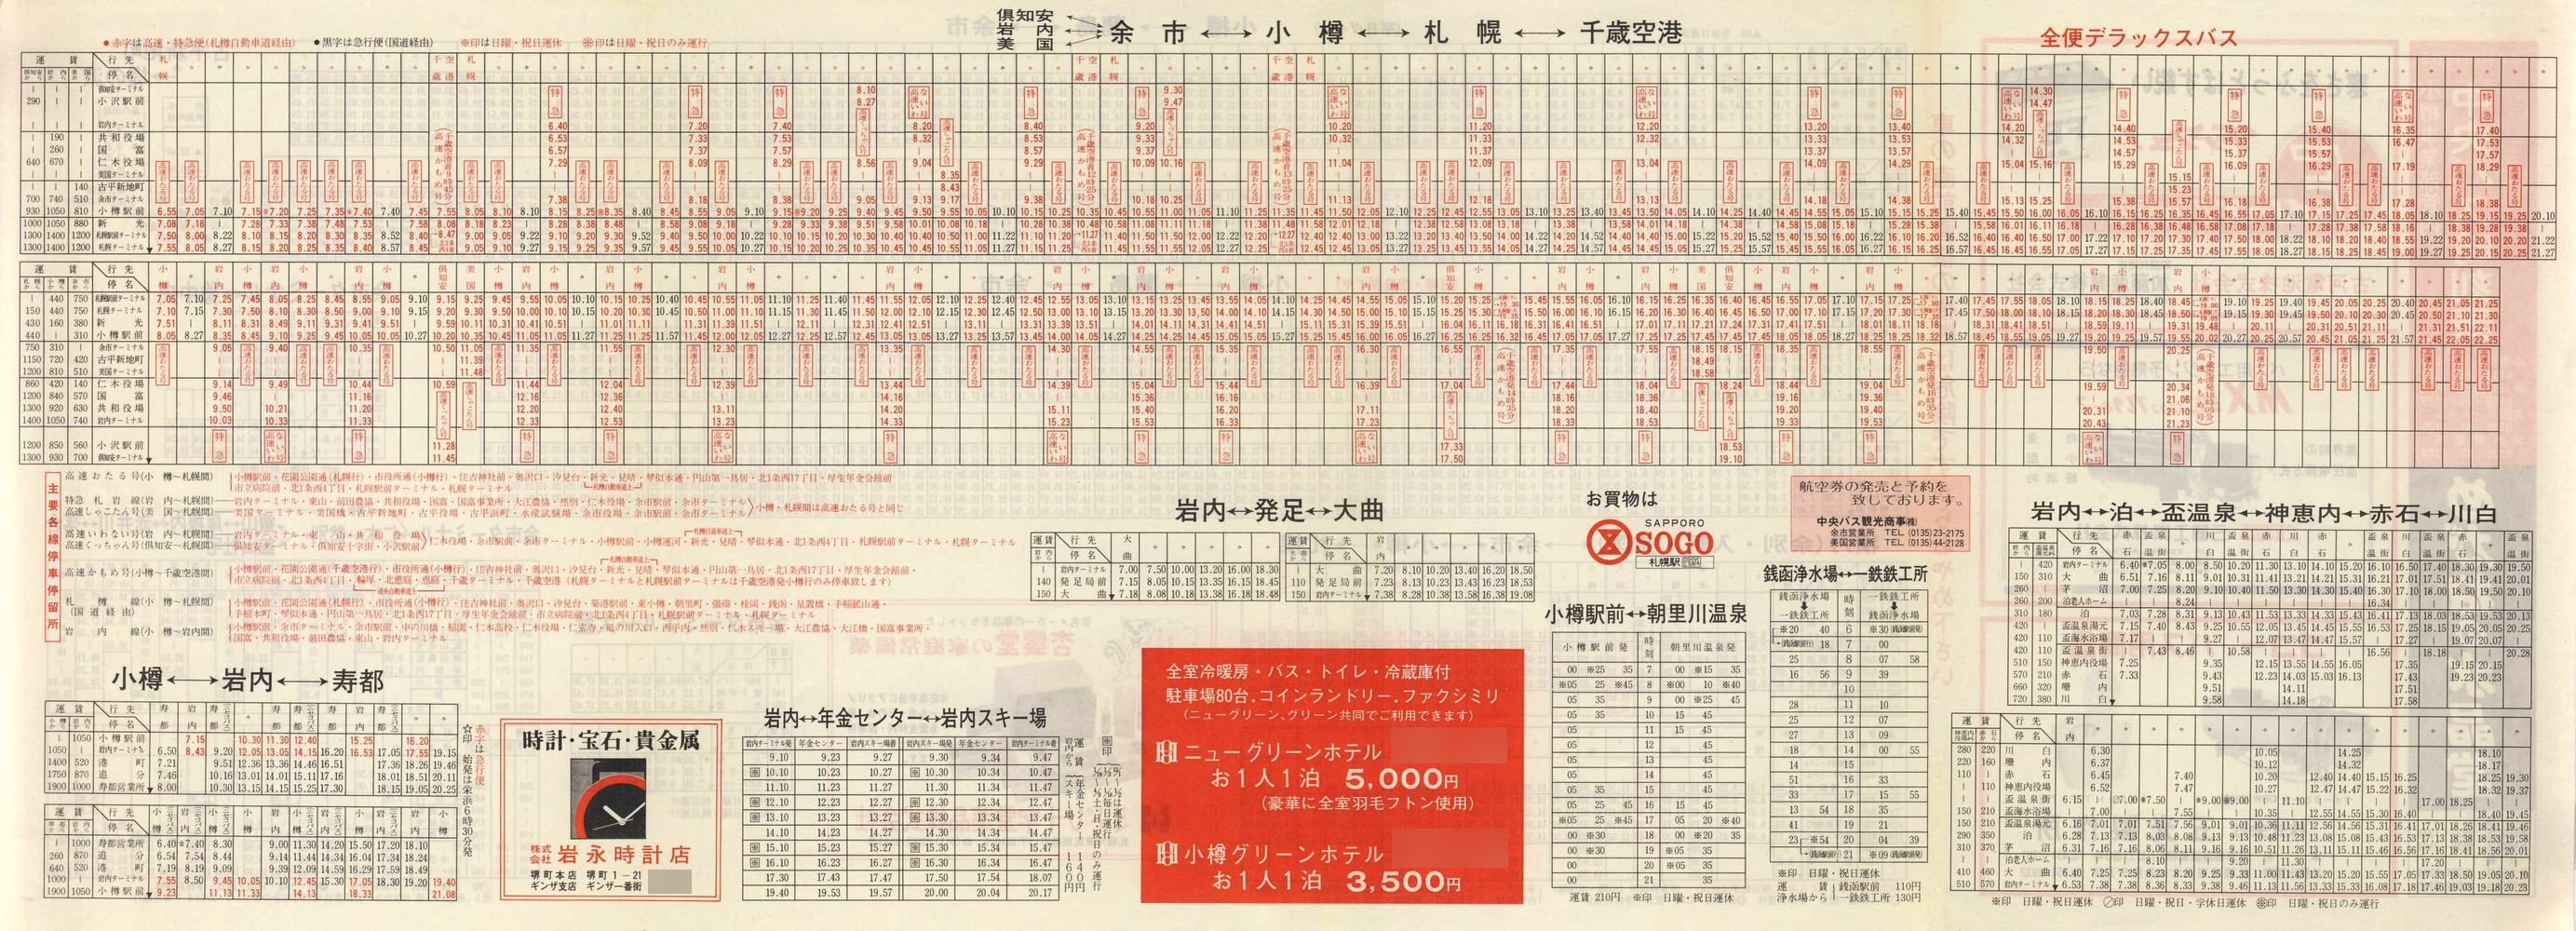 1987-12-01改正_北海道中央バス(小樽)_小樽事業部管内郊外線時刻表裏面